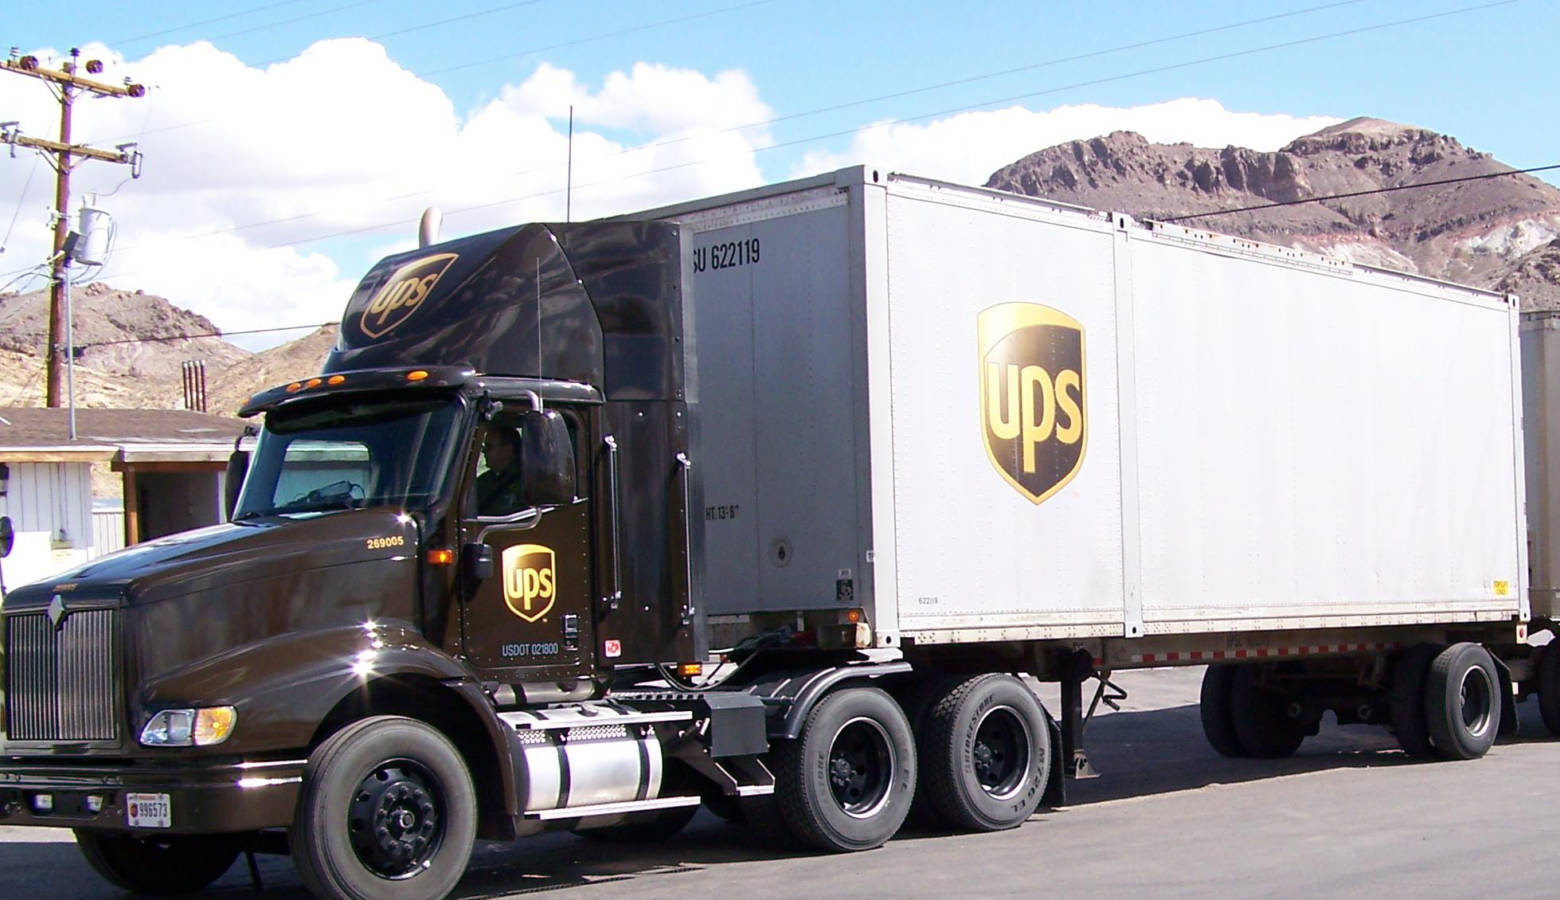 A UPS truck in Beatty, Nevada, 2009 (Mark Holloway/Wikimedia Commons)